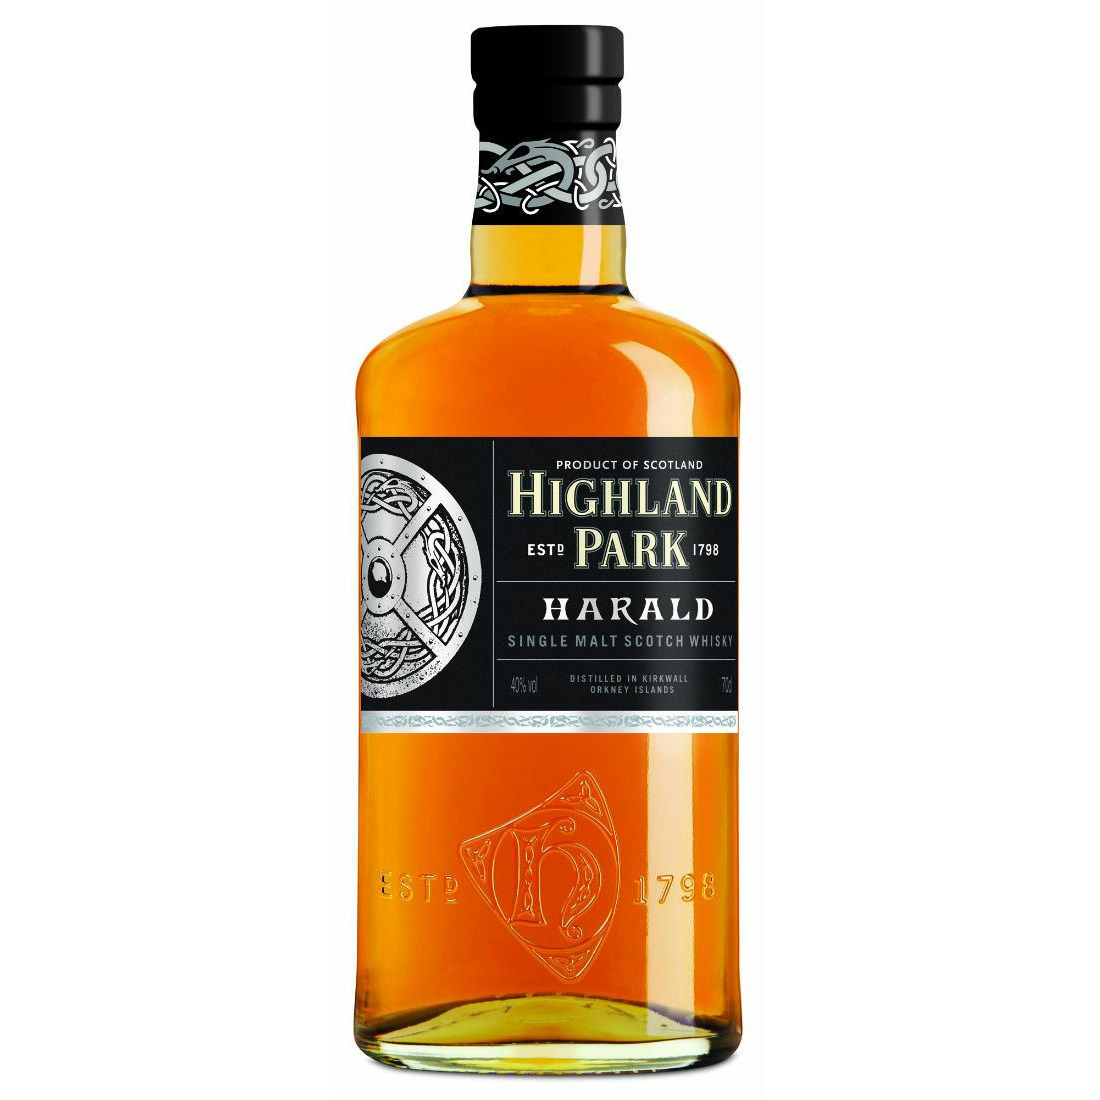 Minachting Wat is er mis Hoogte Highland Park - Harald 70cl Whisky vind je op Whisky.nl